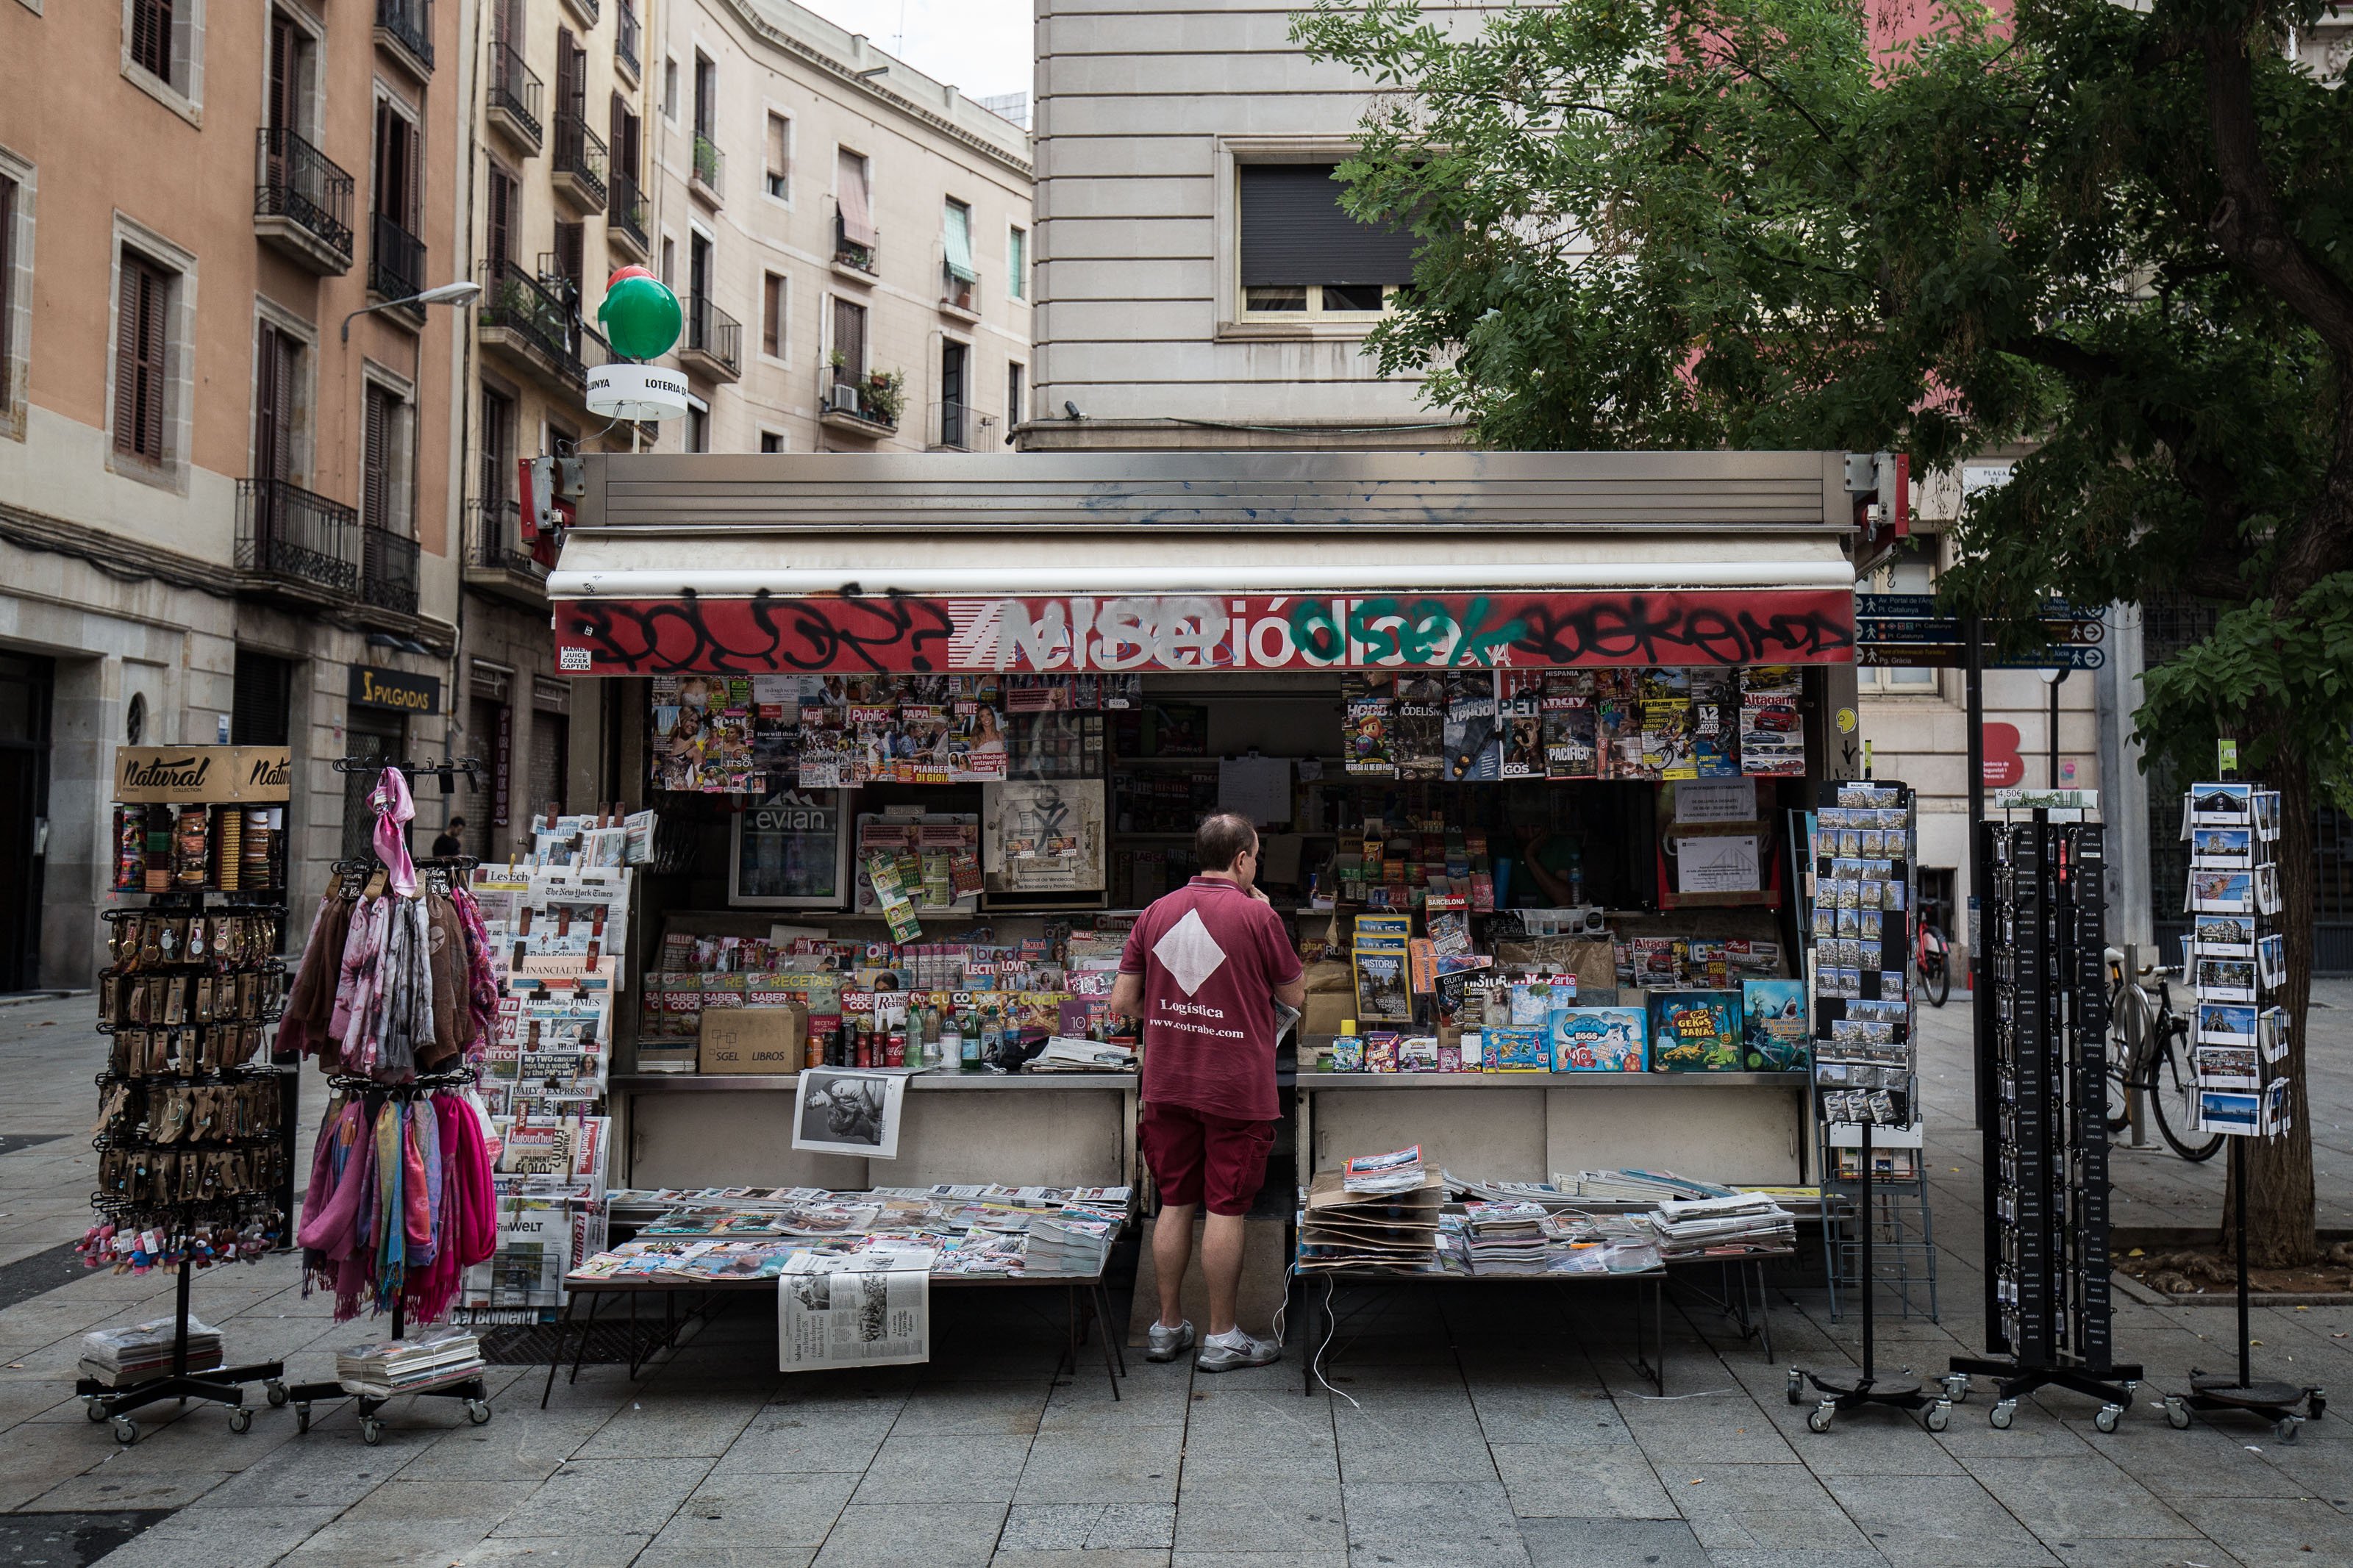 Canvis als quioscos de Barcelona: ara podran servir menjar per emportar i entregar paquets